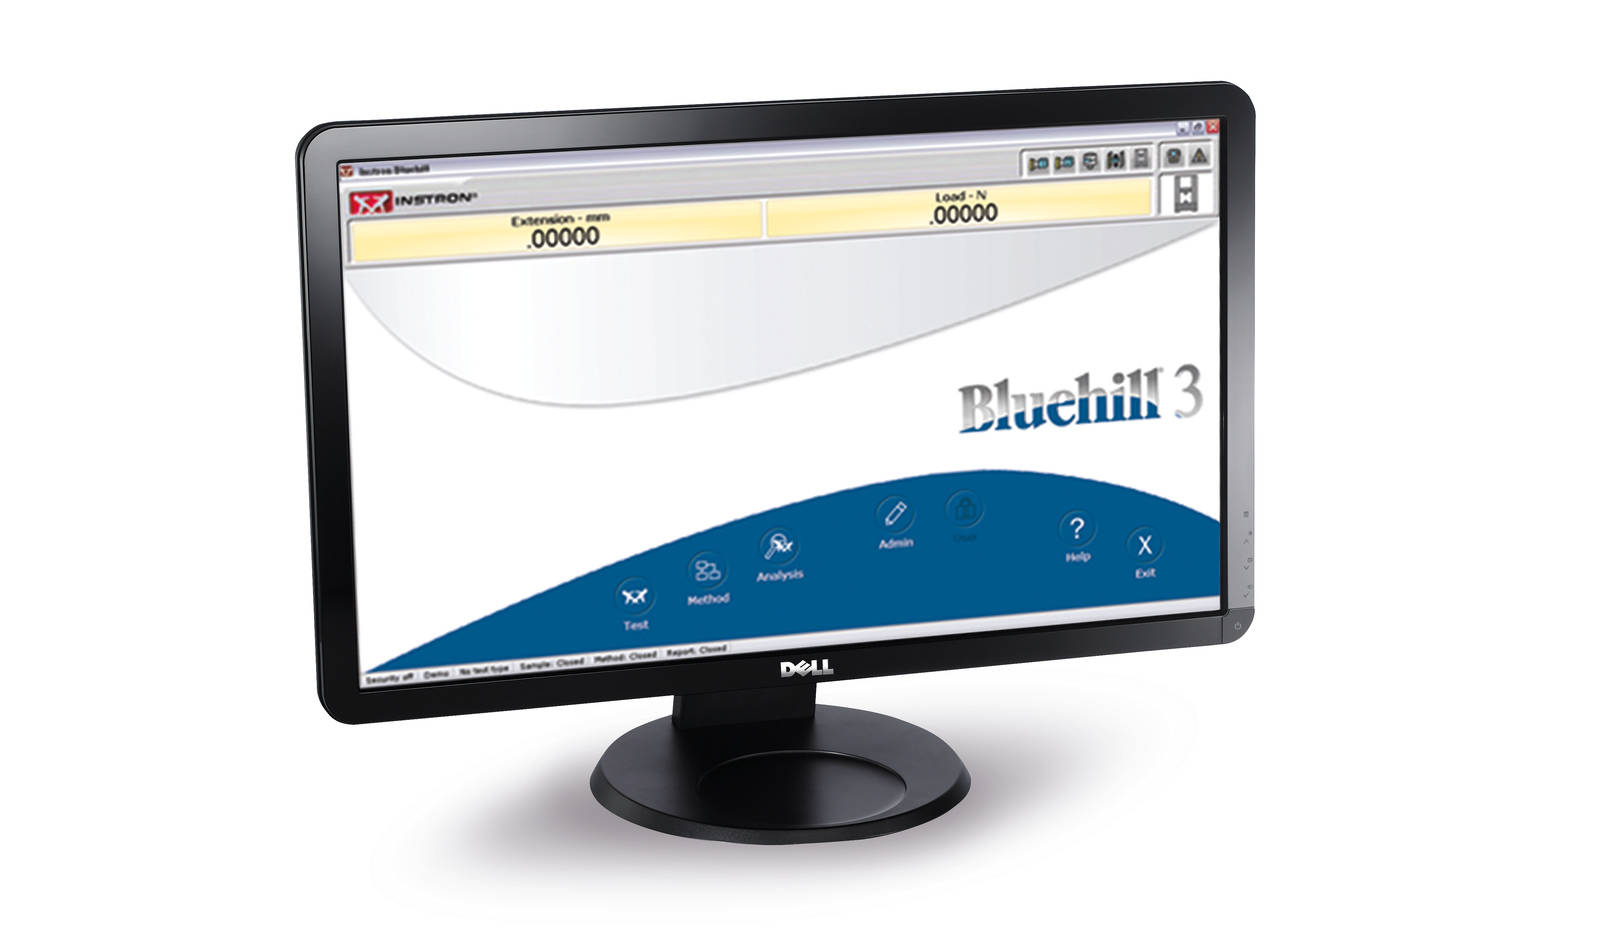 Display del PC con Bluehill 3